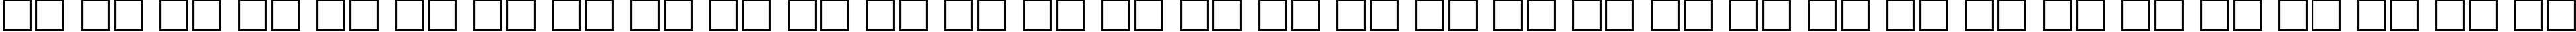 Пример написания русского алфавита шрифтом Optimum Roman